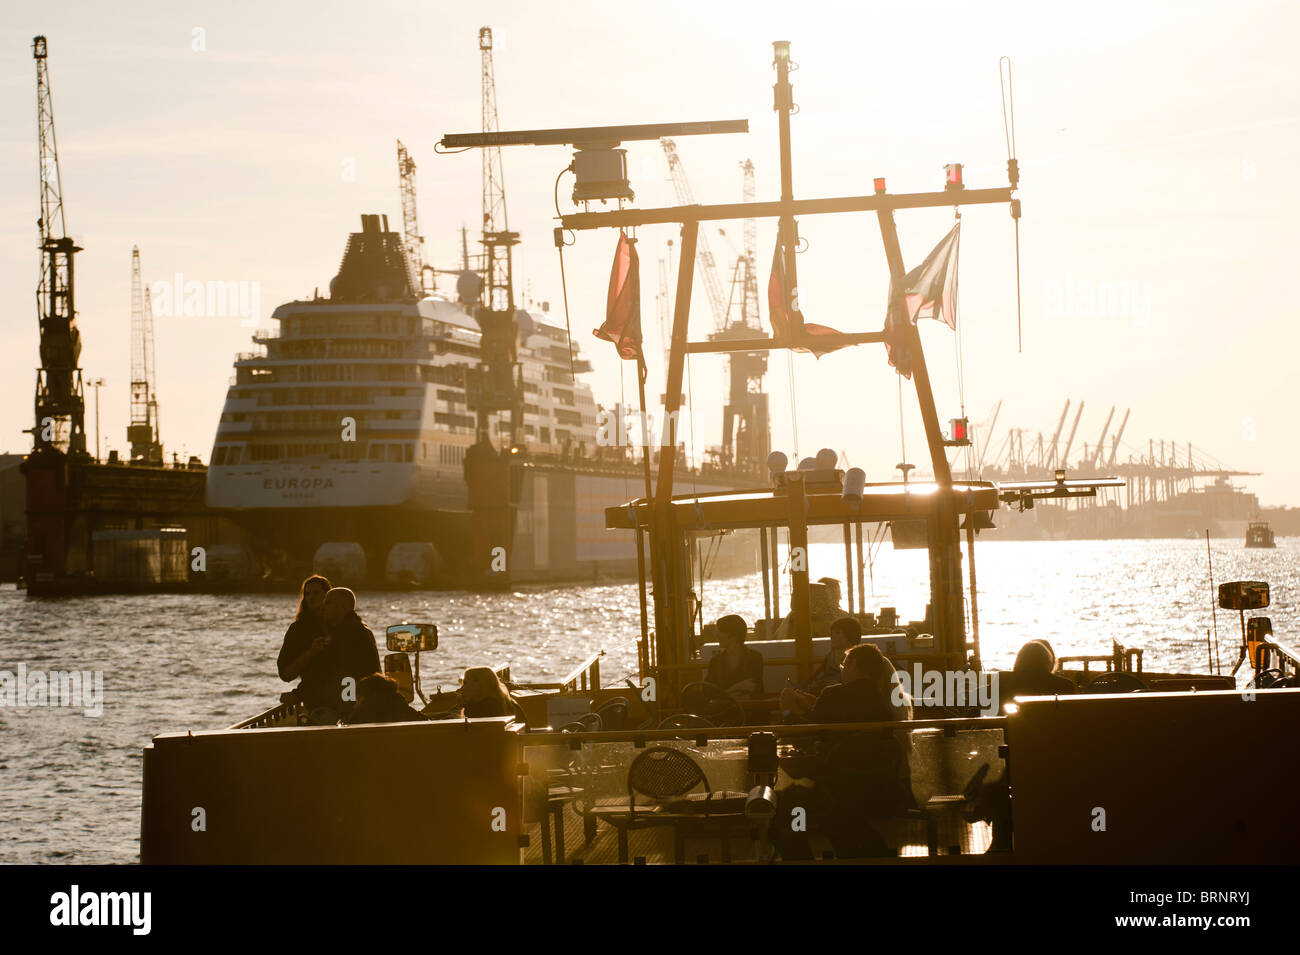 Alemania Hamburgo, puerto fluvial con ferry y astillero Blohm y Voss con crucero Europa de Hapag Lloyd naviera empresa en muelle flotante Foto de stock